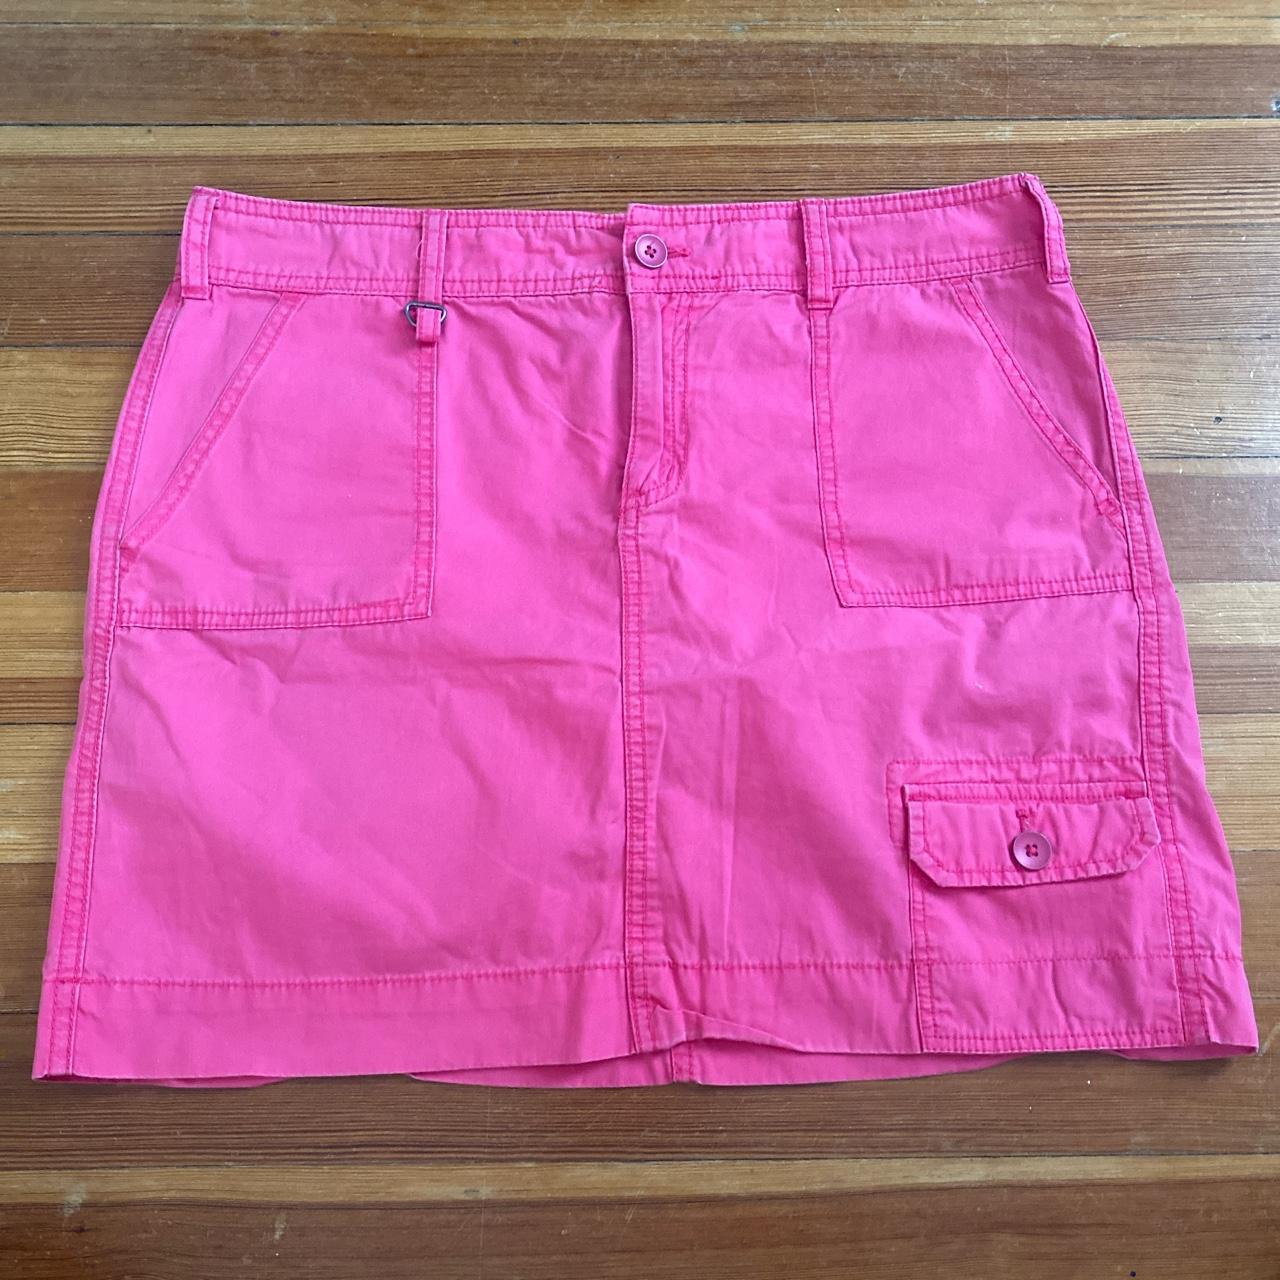 Women's Pink Skirt | Depop